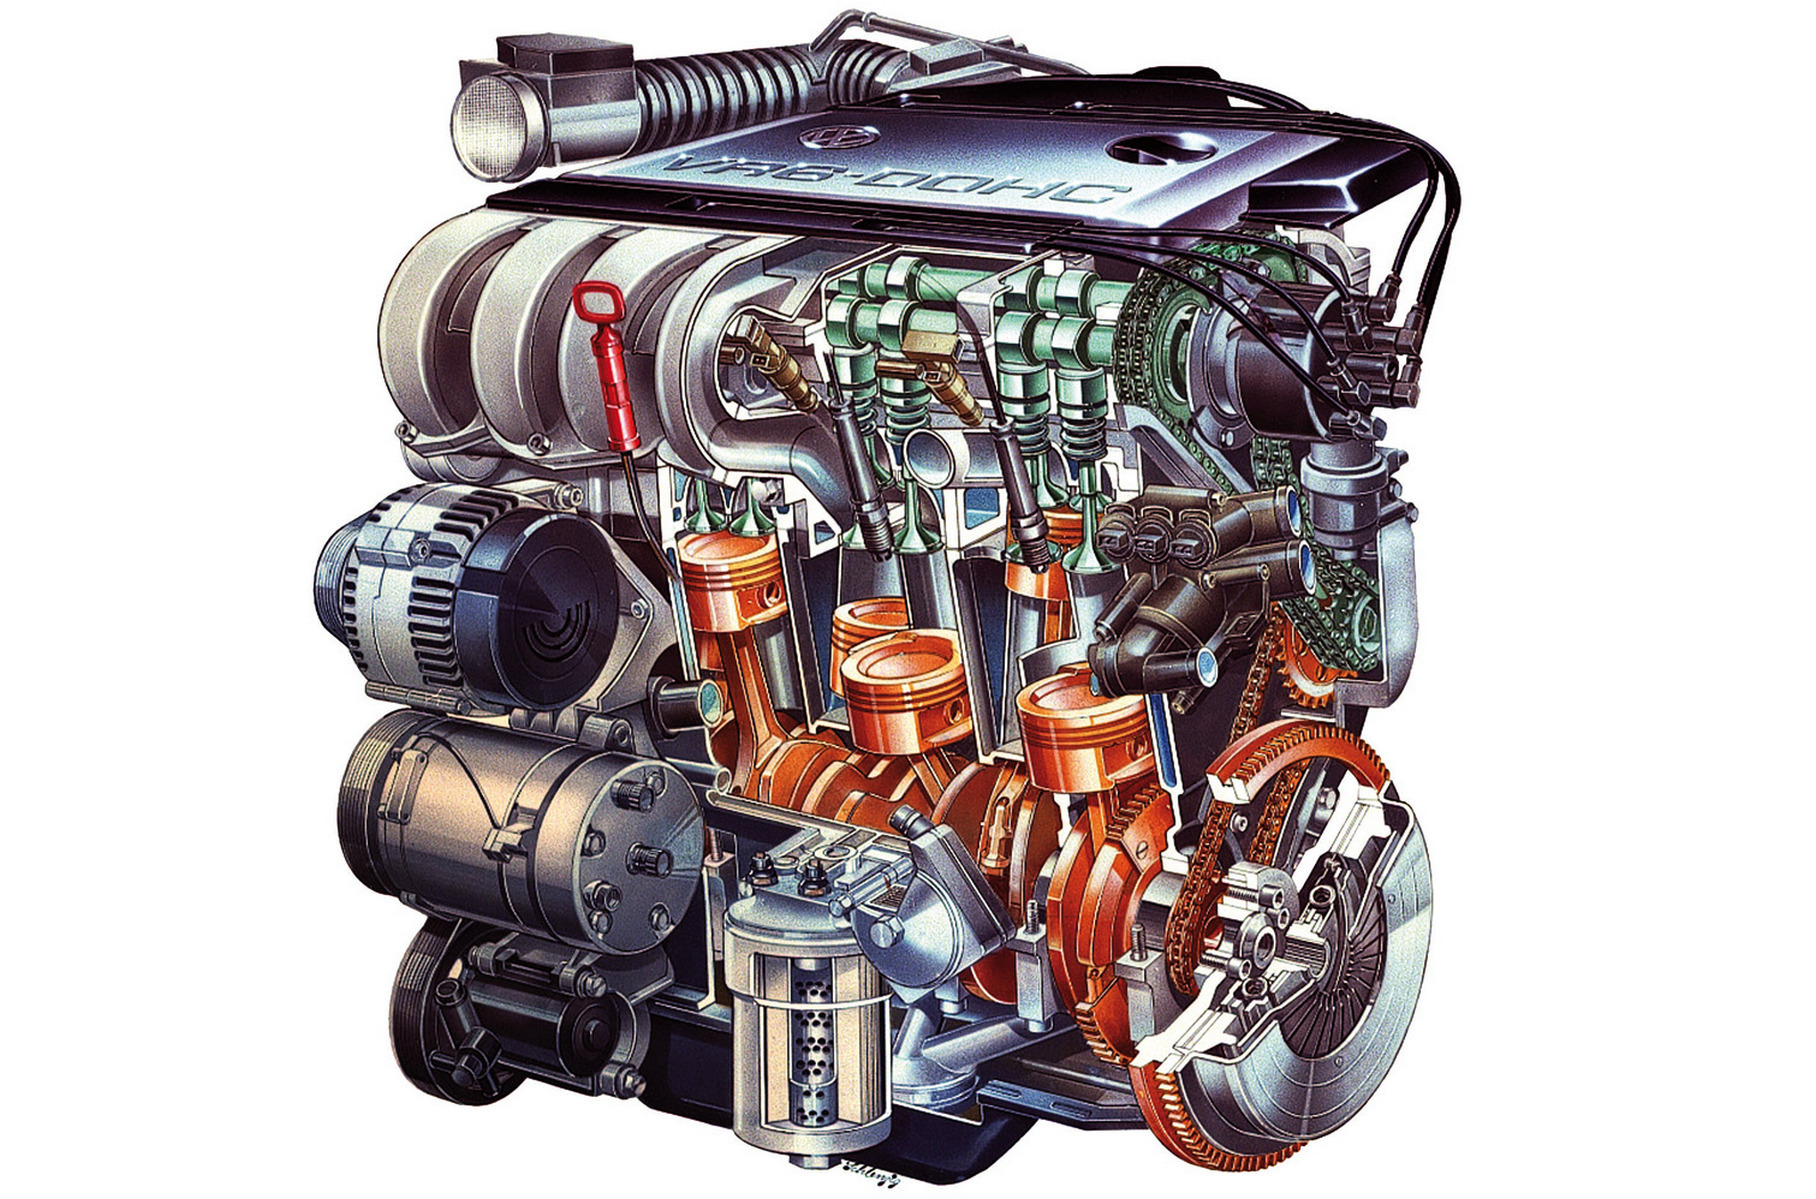 В цехе 6 моторов для каждого мотора. ДВС vr6 Фольксваген. Vr5 двигатель Фольксваген. Двигатель VW vr6 2.8. Мотор вр6.